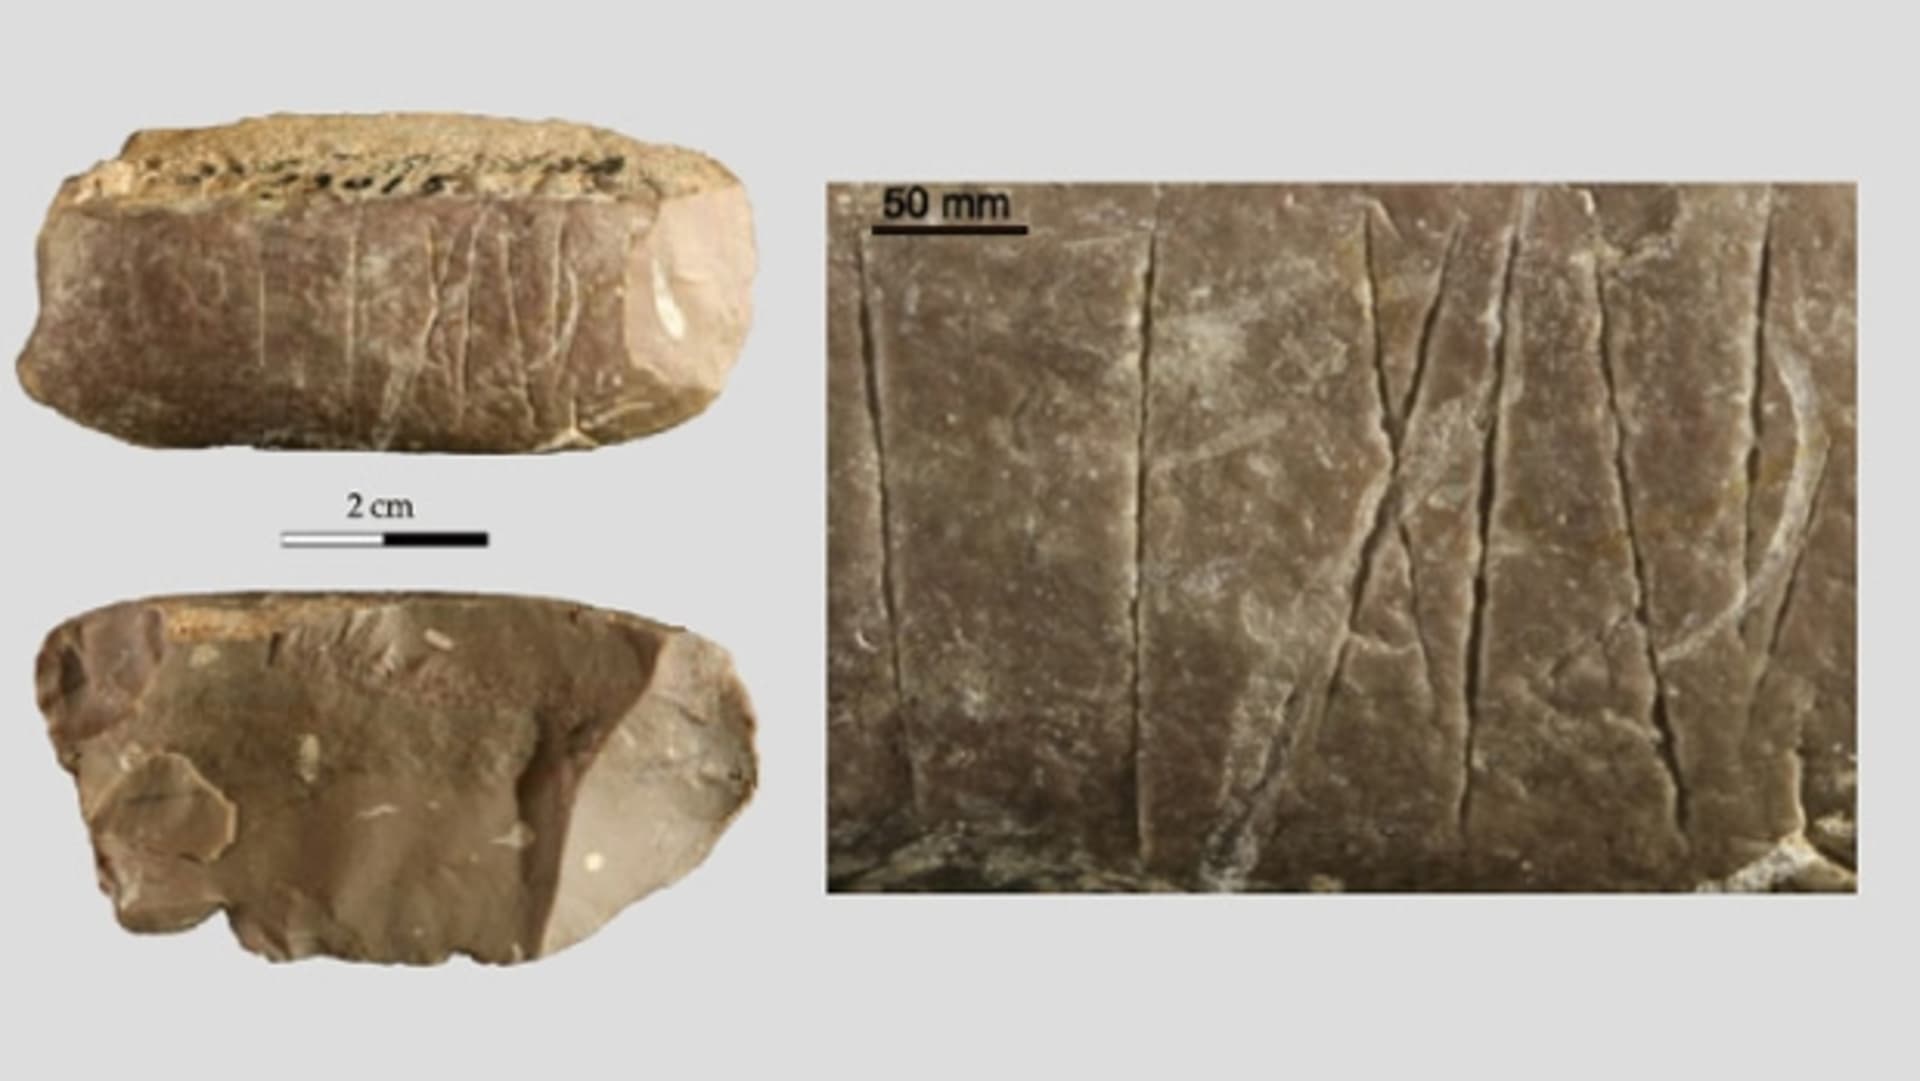 Písmo staré 30 tisíc let? Záhadné runy z Číny